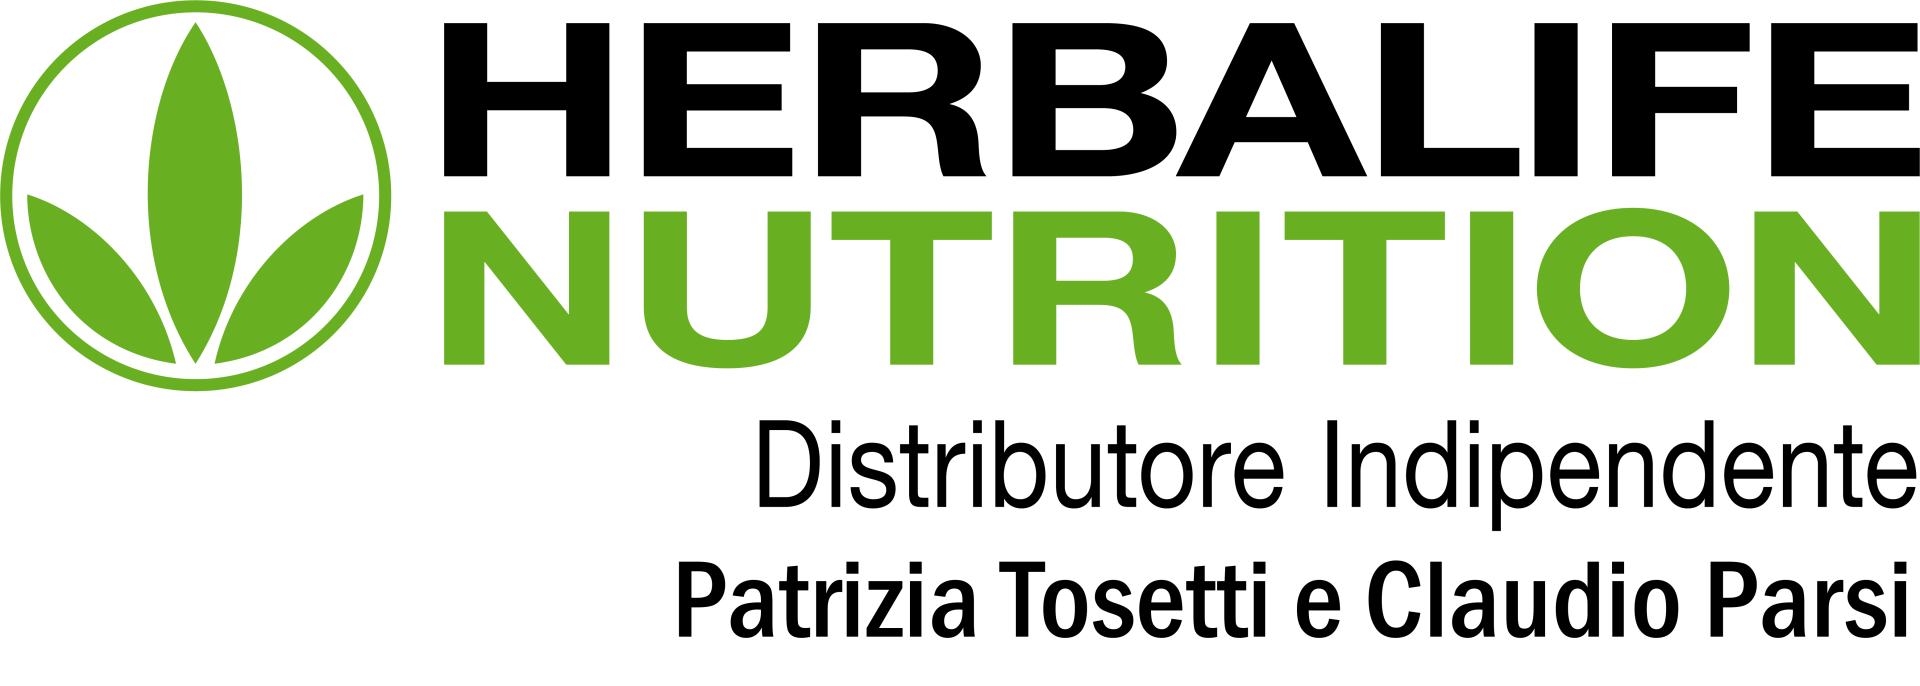 Patrizia e Claudio - Herbal Point Nutrition Logo